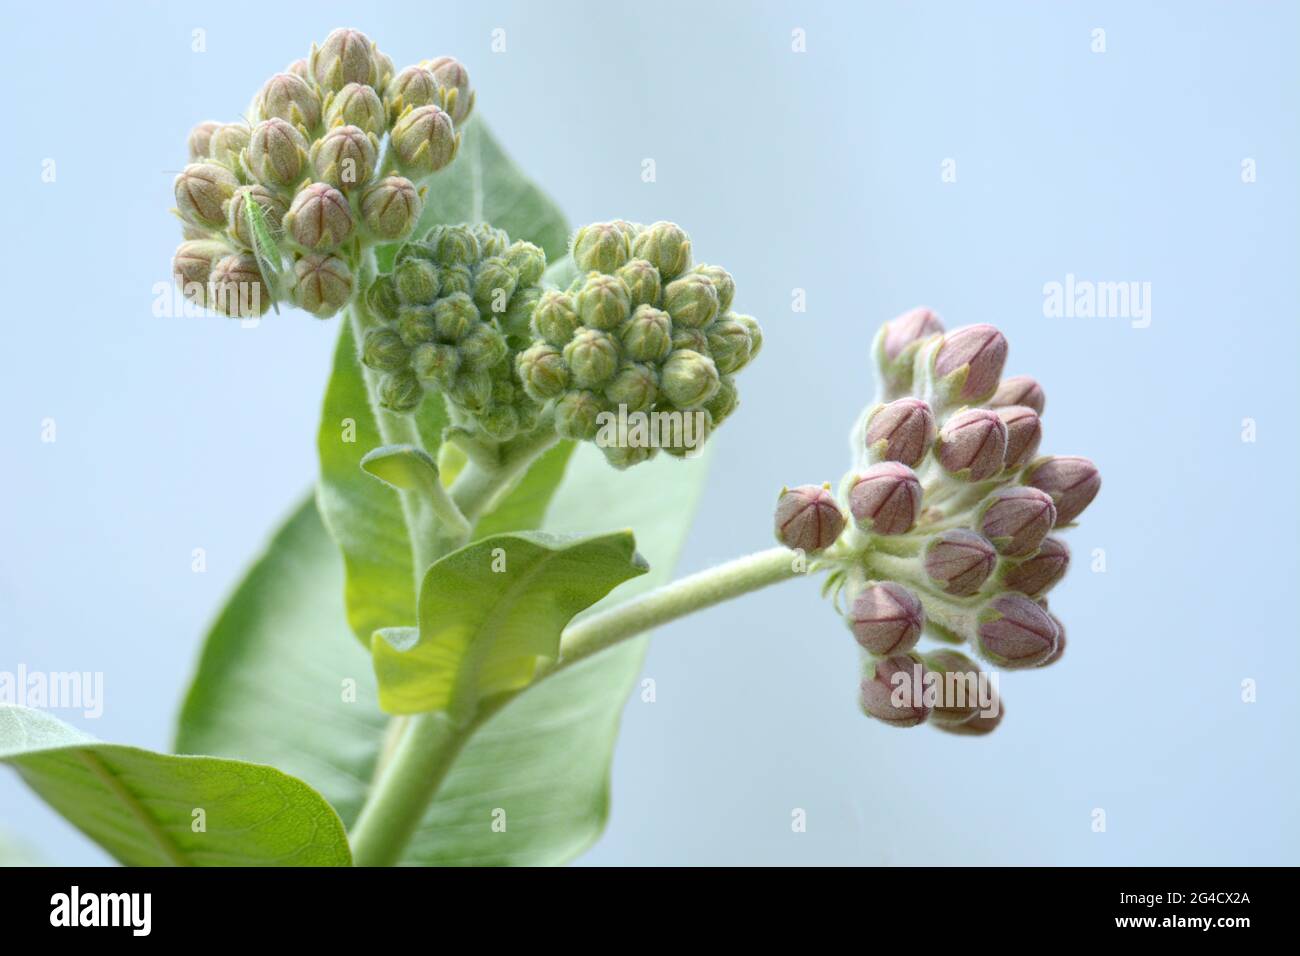 Im Frühling auffällige Milchkrautknospen oder Asclepias speciosa Knospen und Blätter vor blauem See Natur Hintergrund Stockfoto